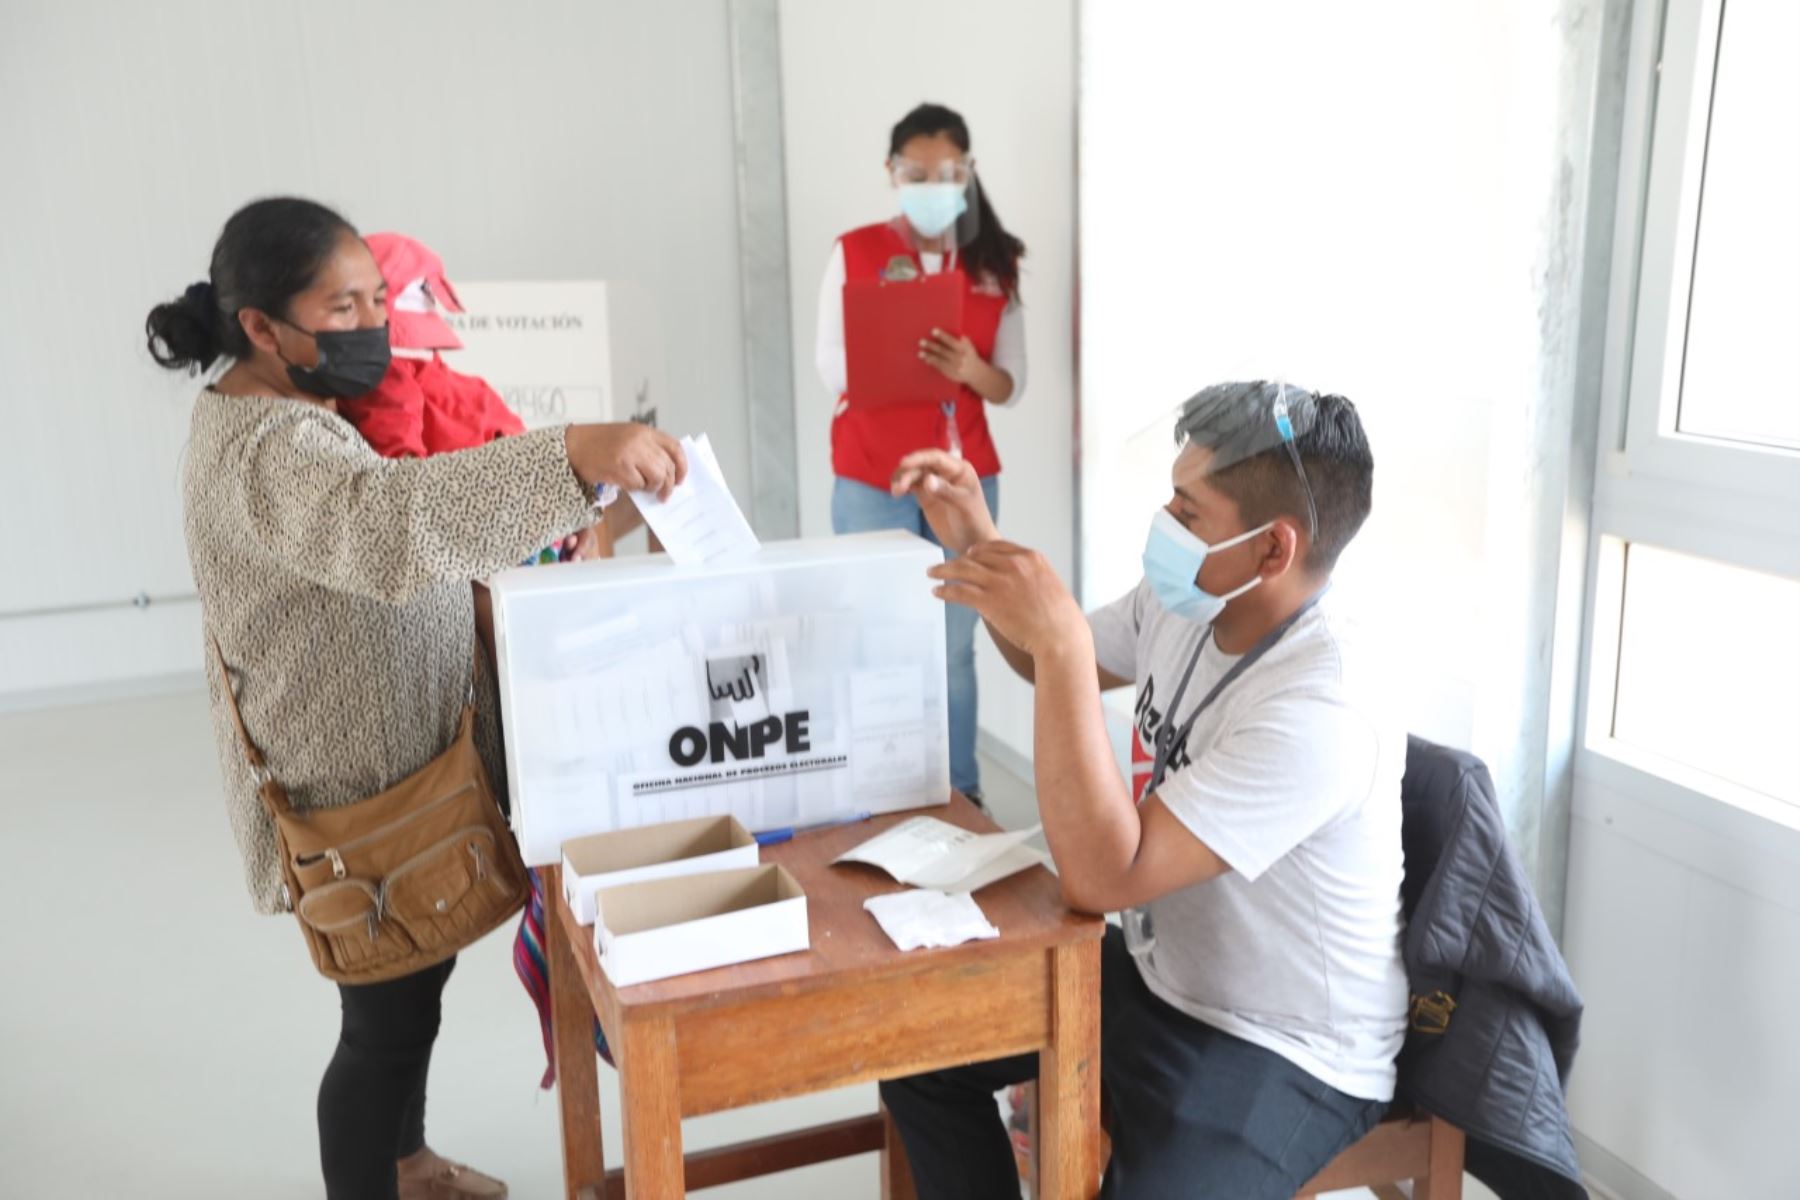 Los distritos de Huayucachi y Cotabambas tienen la mayor cantidad de electores para el proceso de consulta popular de revocatoria que se realizará en octubre.